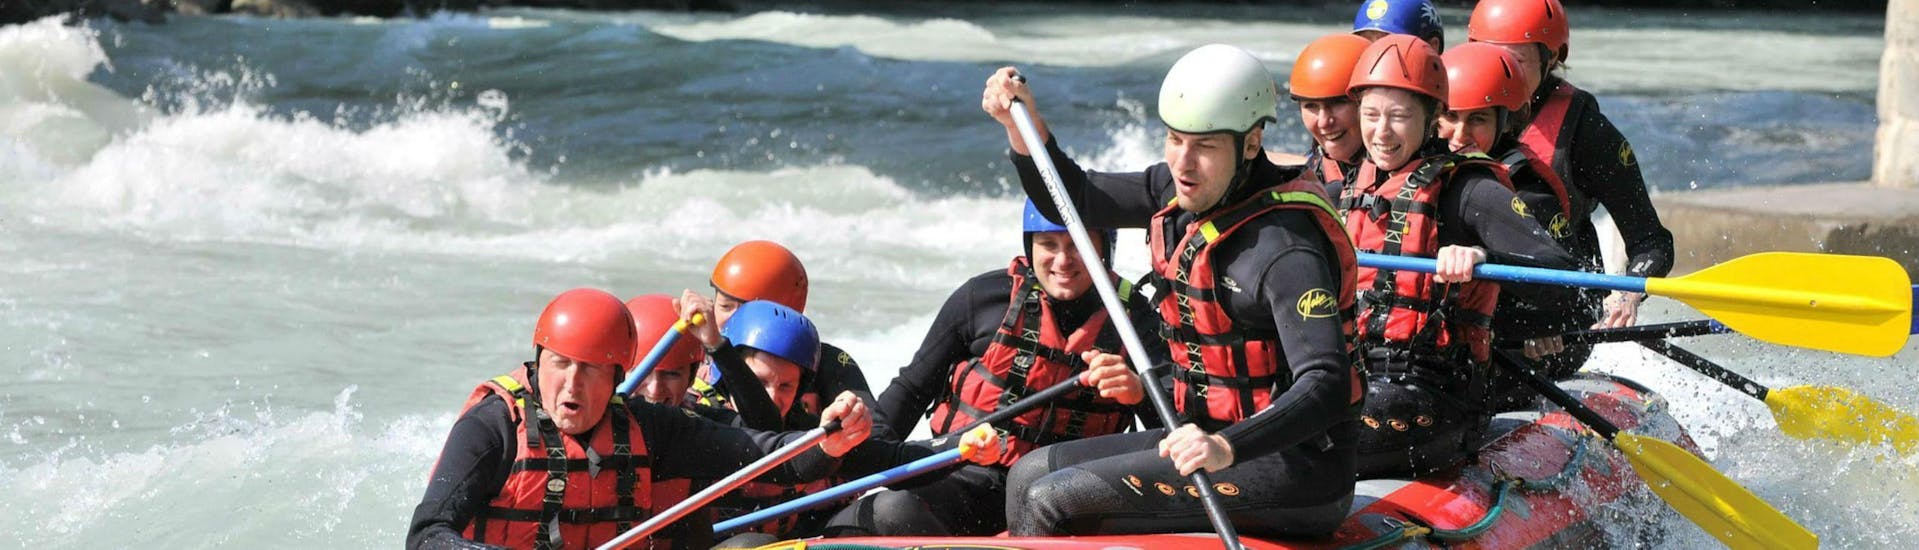 Eine Gruppe von Freunden nimmt auf ihrer klassischen Rafting-Tour mit 7 Aventures einige Stromschnellen auf dem Fluss Dranse in Angriff.